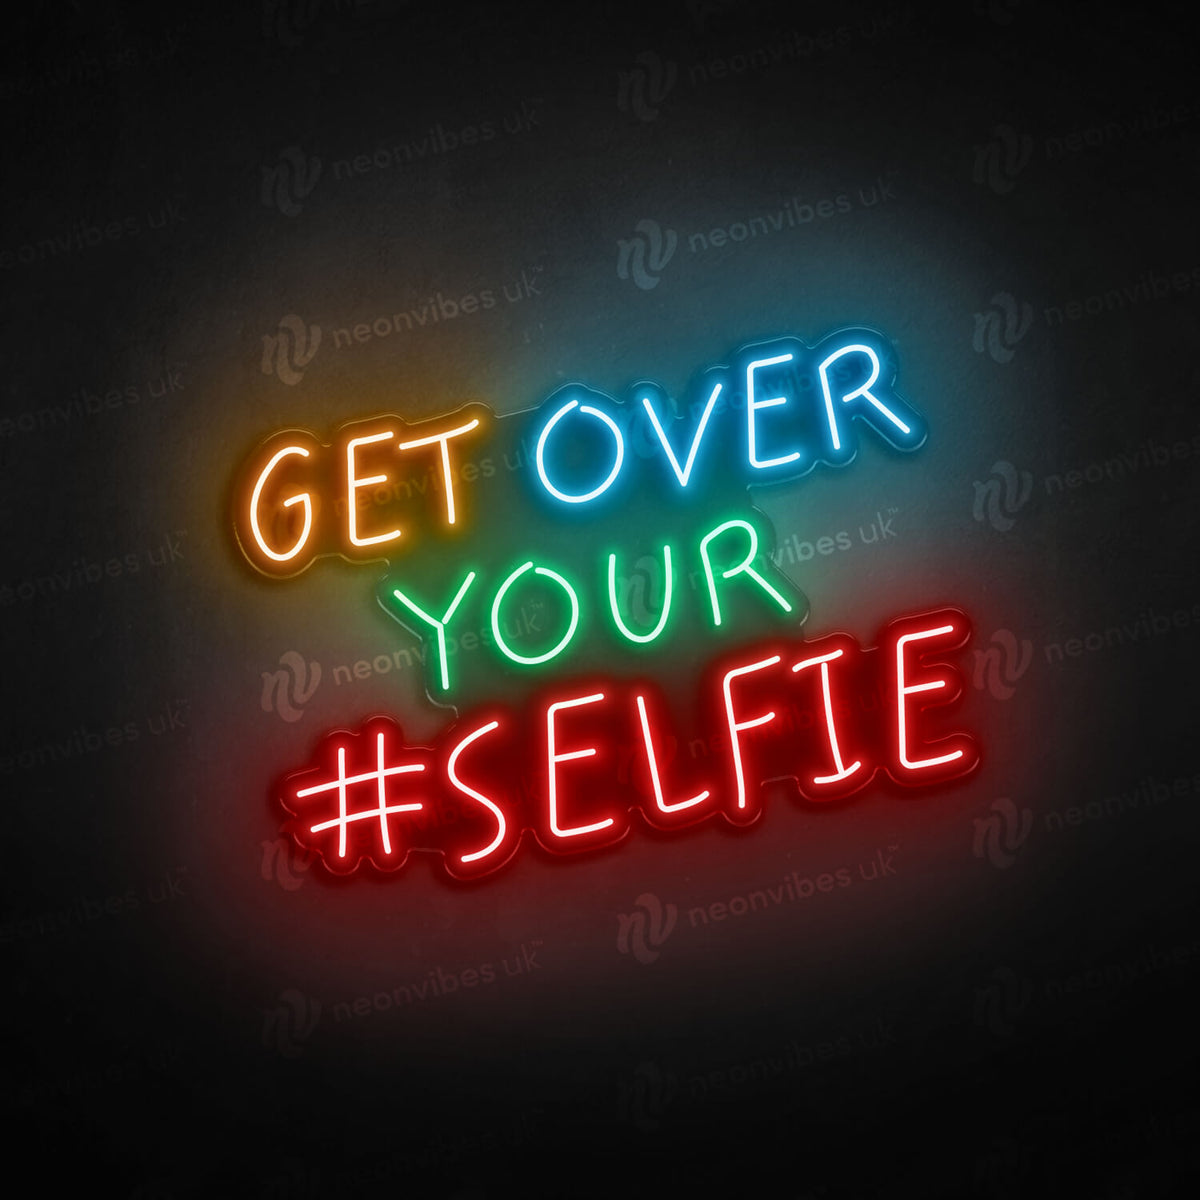 Get over your selfie neon sign